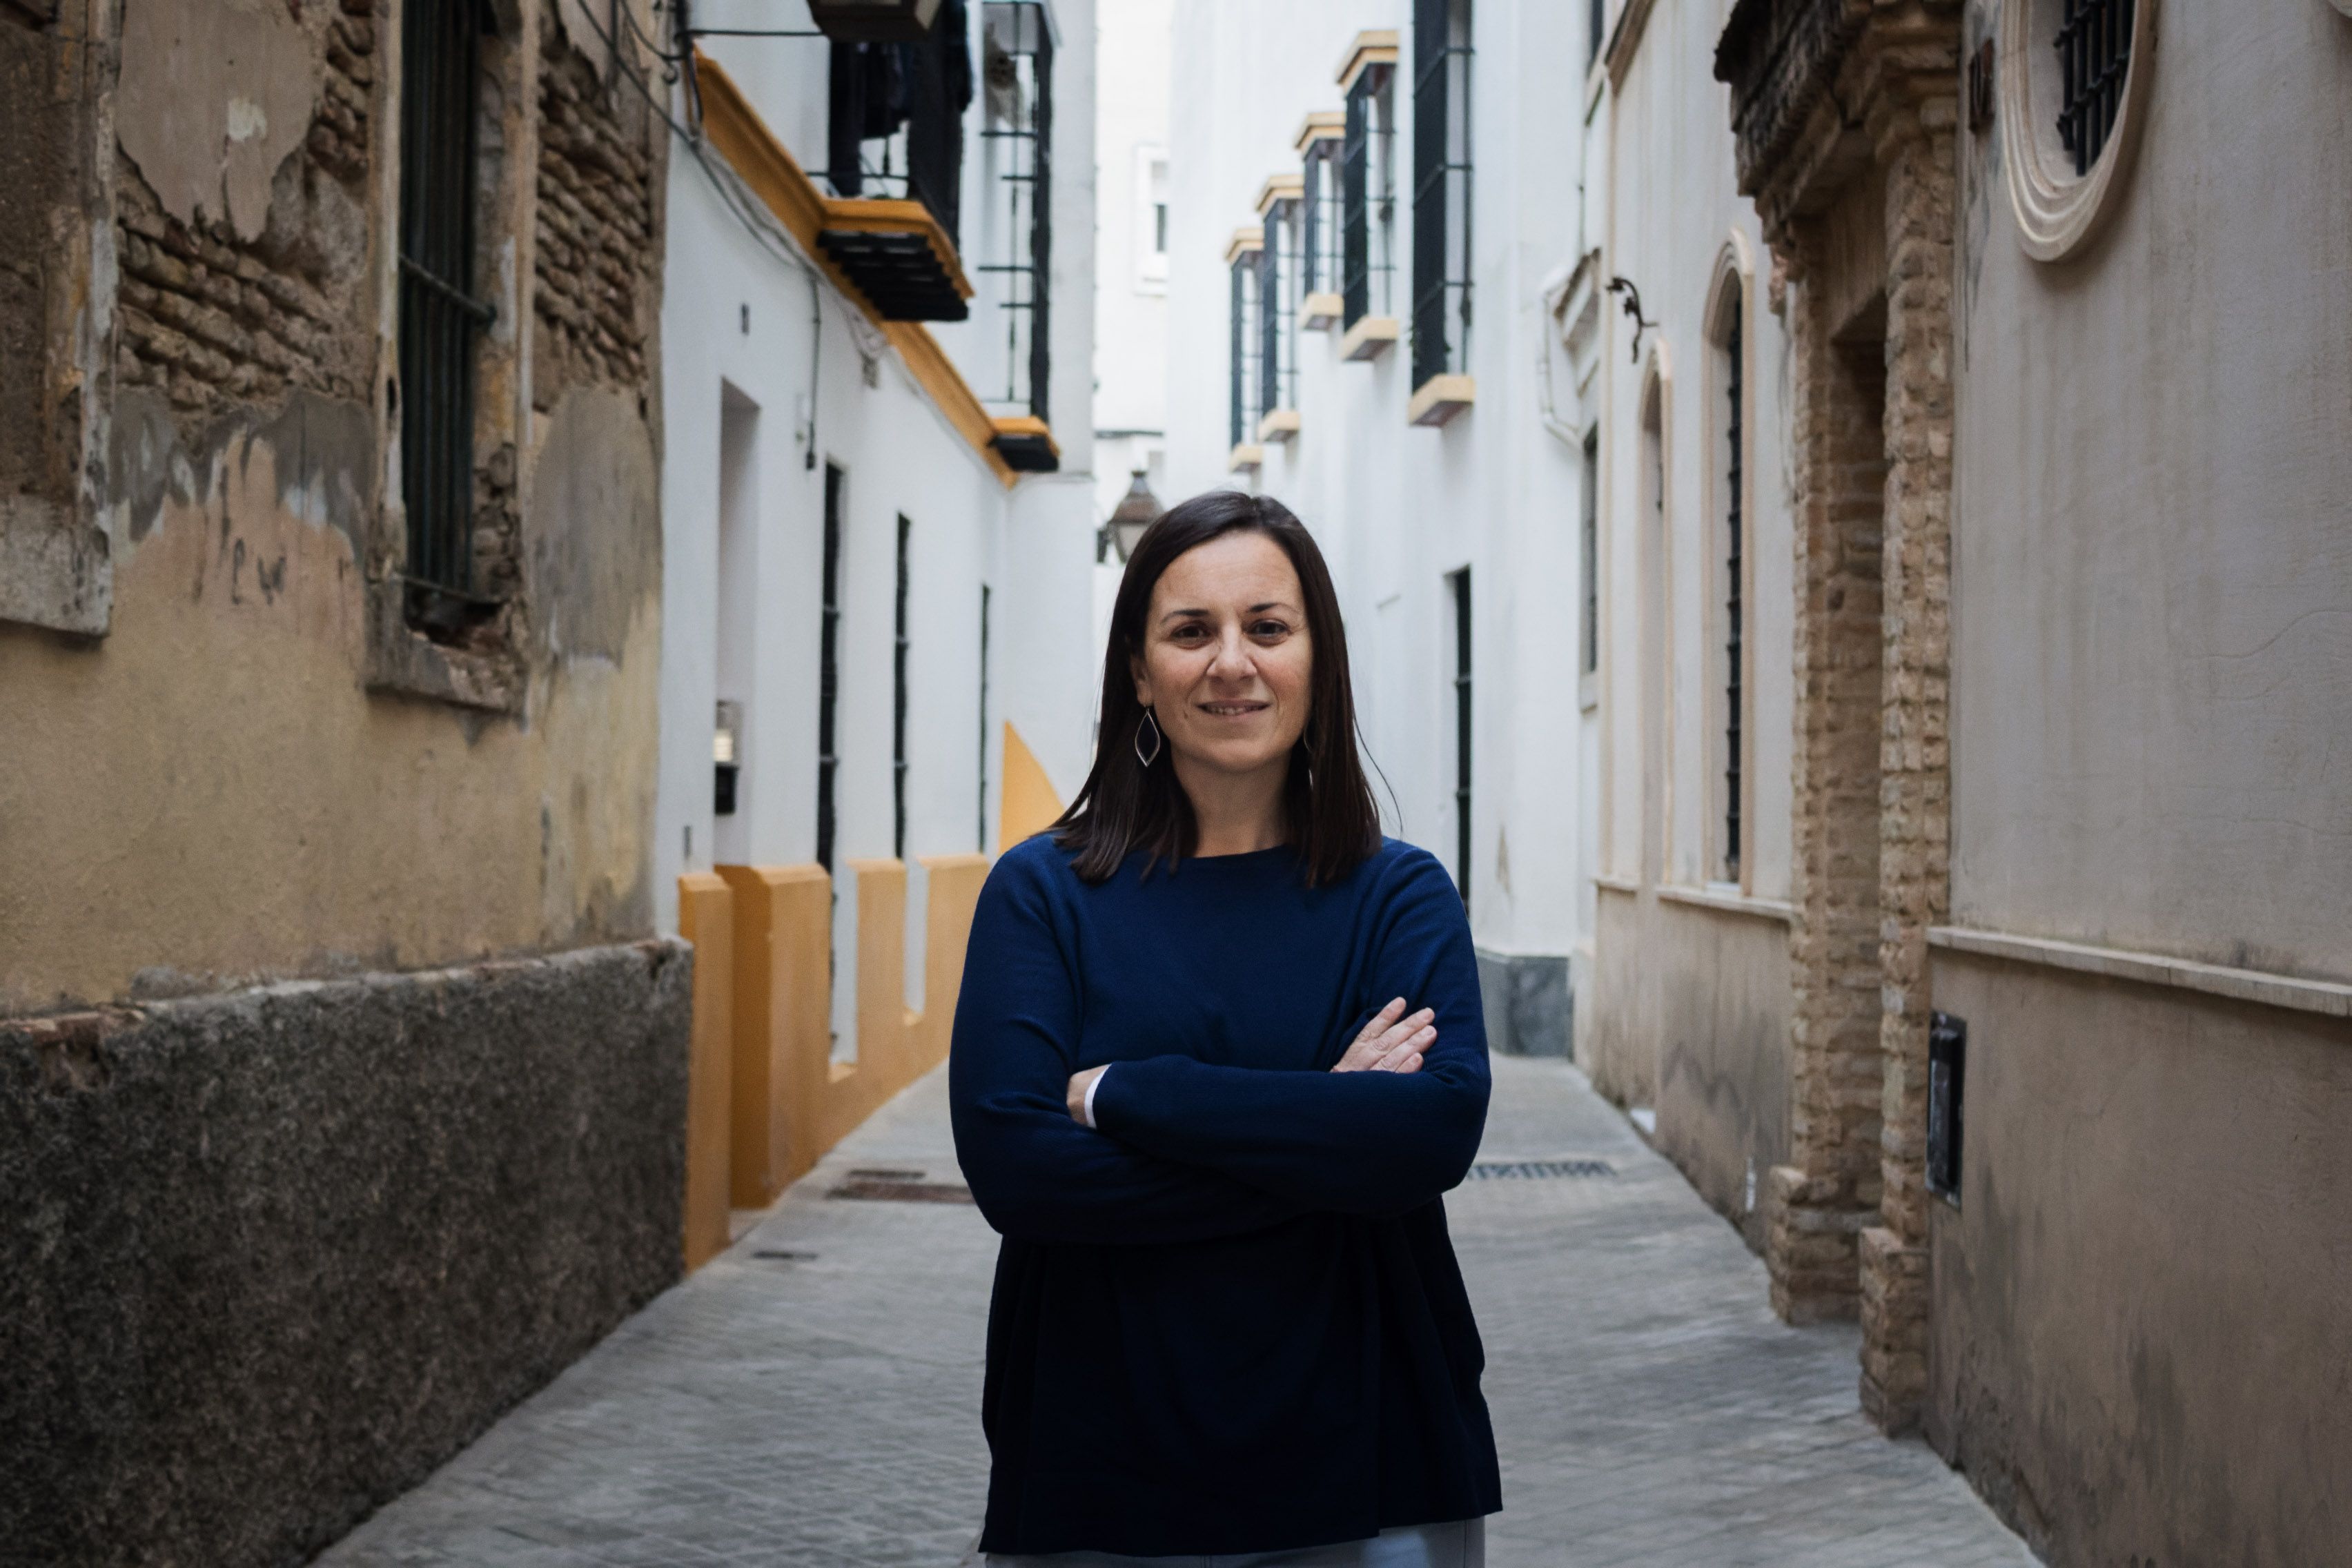 Auxiliadora González, en una imagen en el centro de Jerez, es trabajadora social y antropóloga: "La pobreza se hereda".